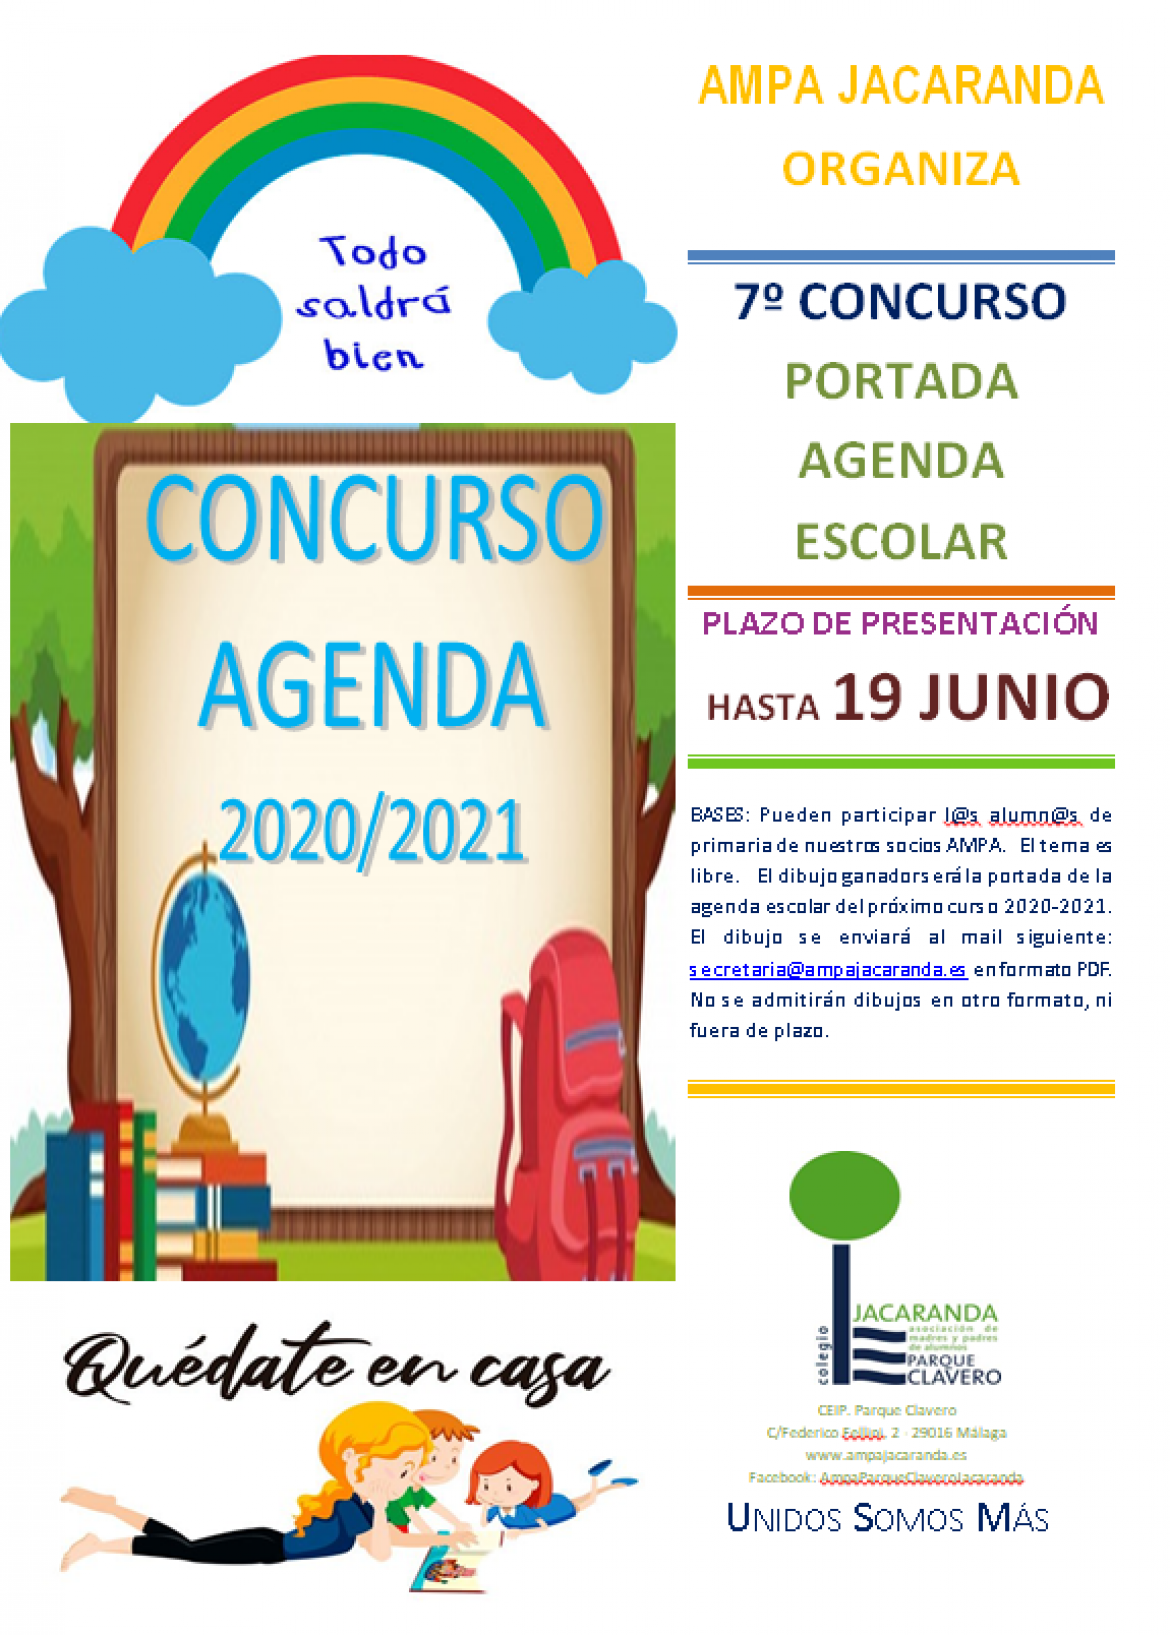 Concurso agenda 2020-2021